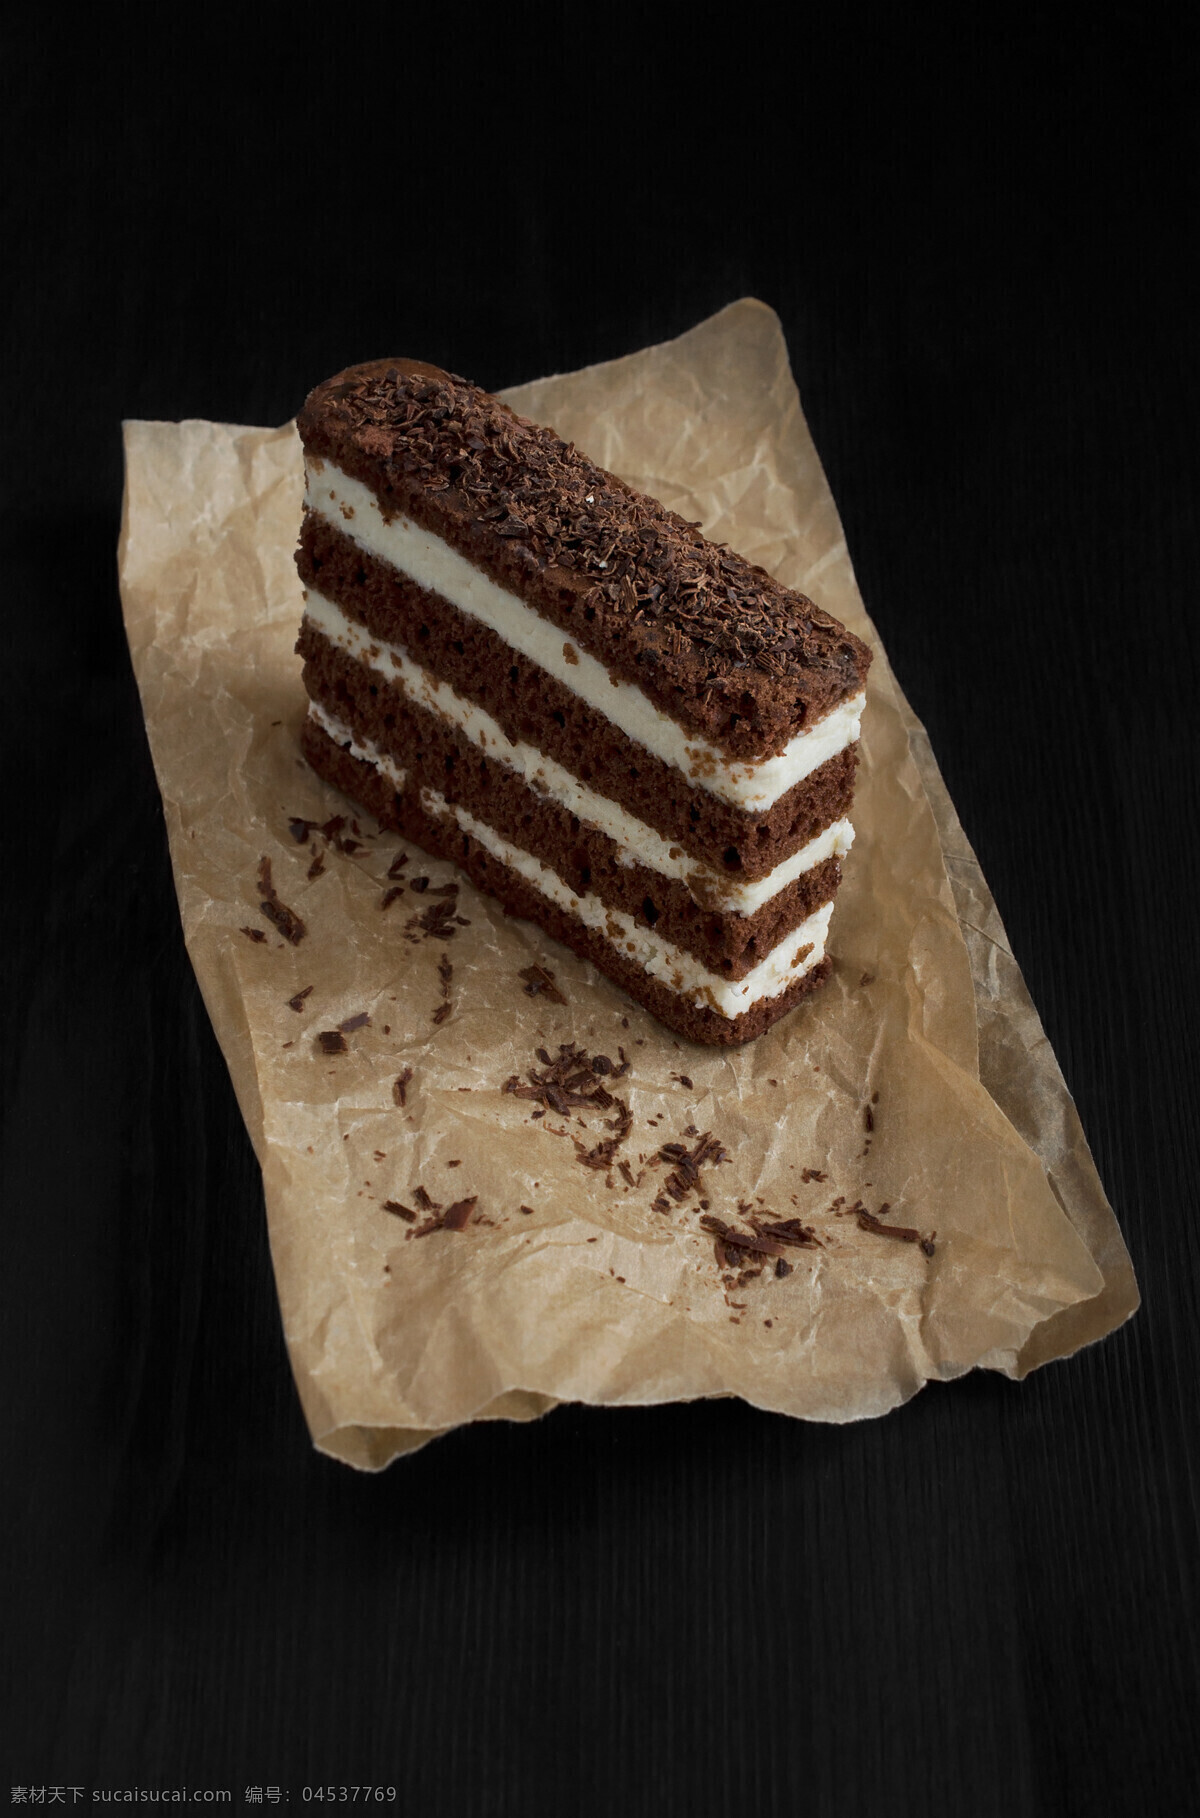 巧克力蛋糕 可可蛋糕 巧克力 蛋糕 糕点 奶油蛋糕 草莓蛋糕 食品 美味的甜点 食物 美食 餐饮美食 西餐美食